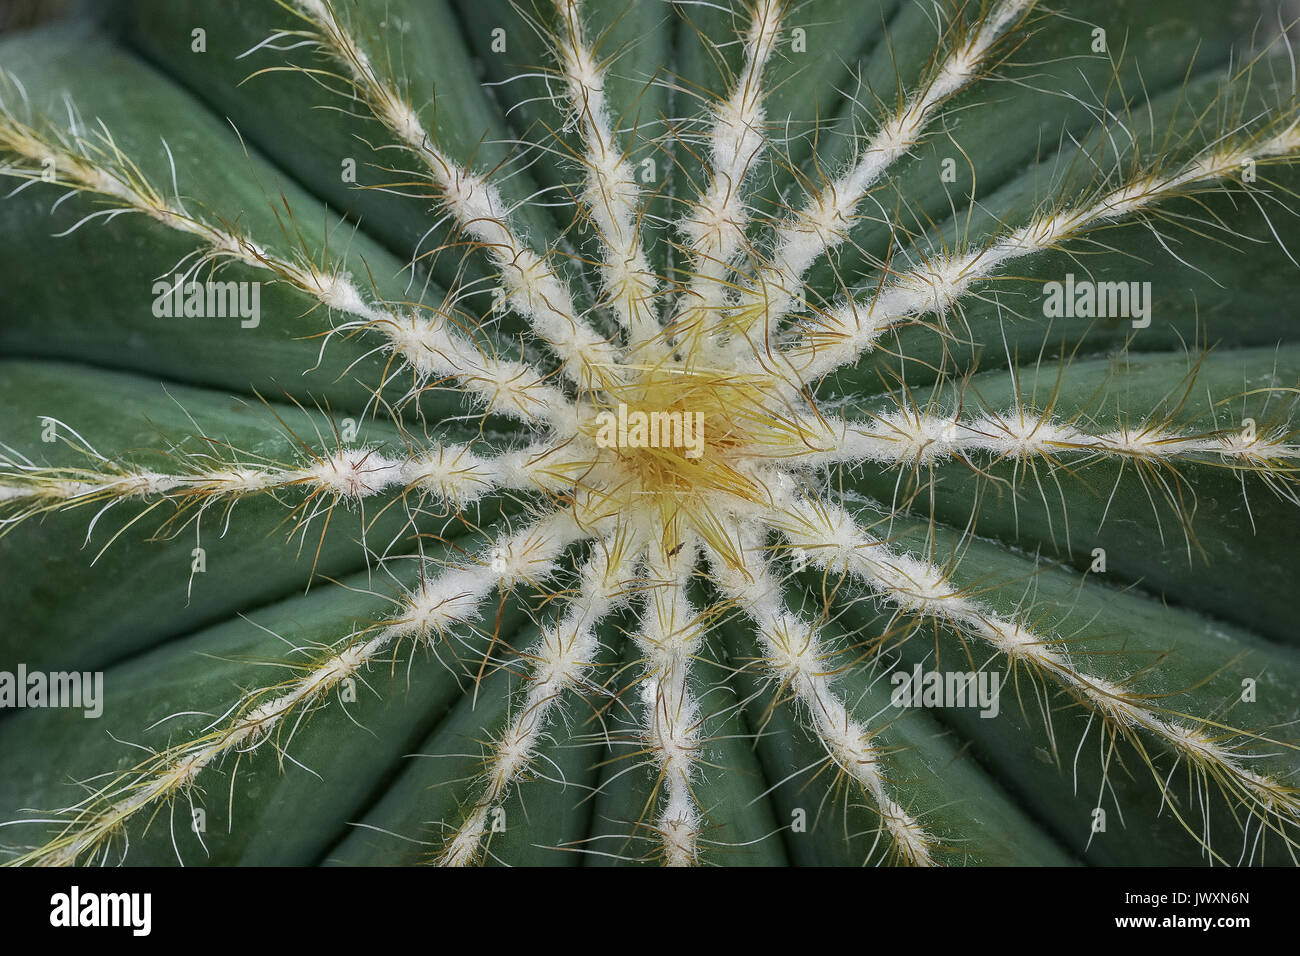 Macro photographie d'un cactus montrant sa symétrie Banque D'Images